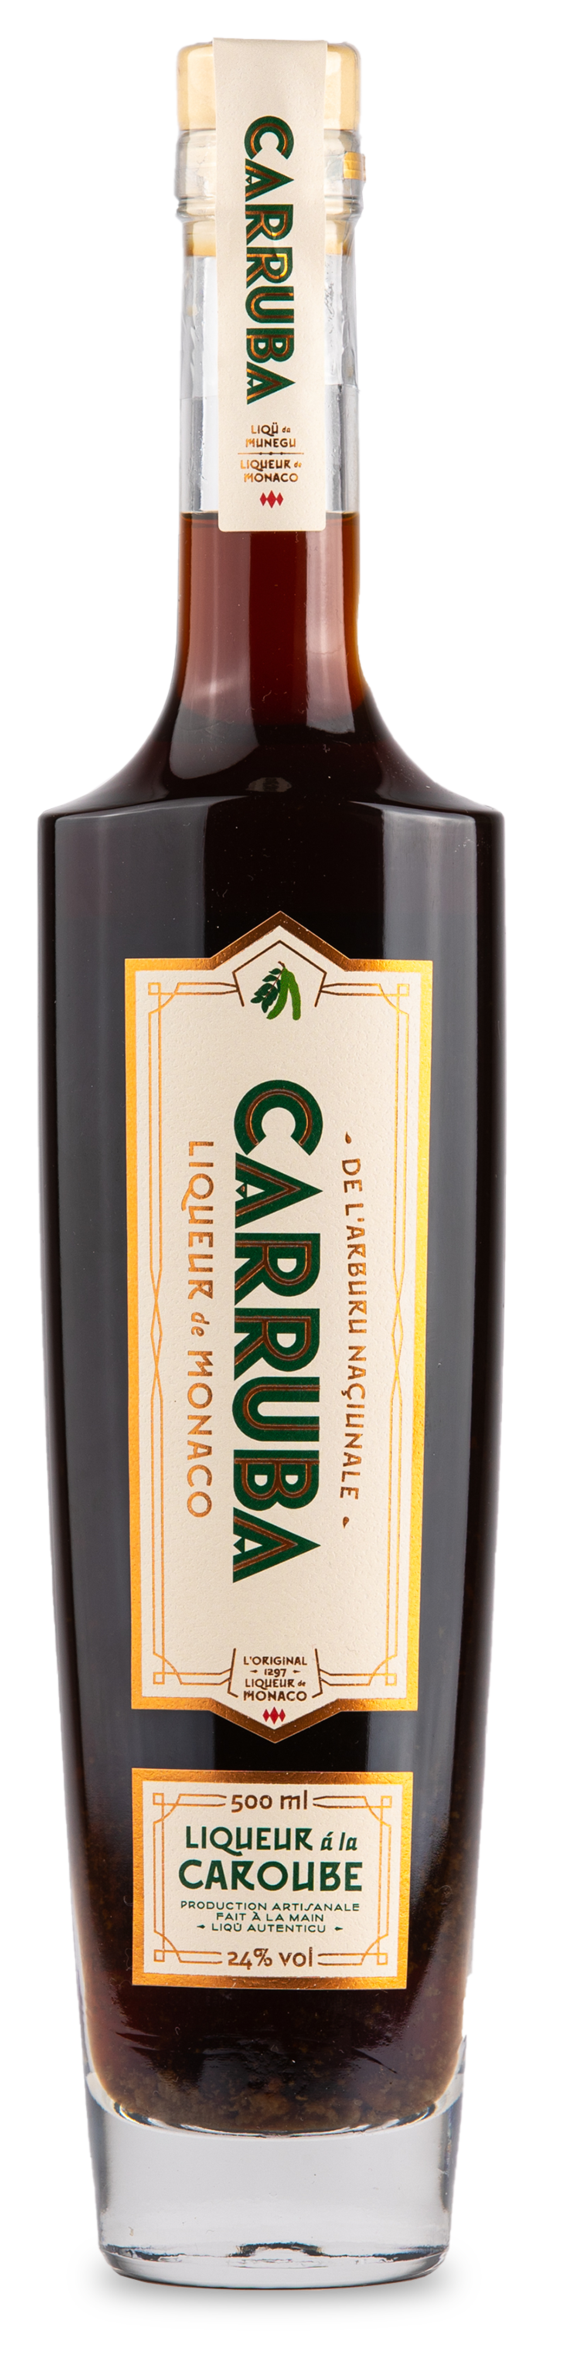 Liqueur Chartreuse Verte 35cl xx - La Cave Saint-Vincent